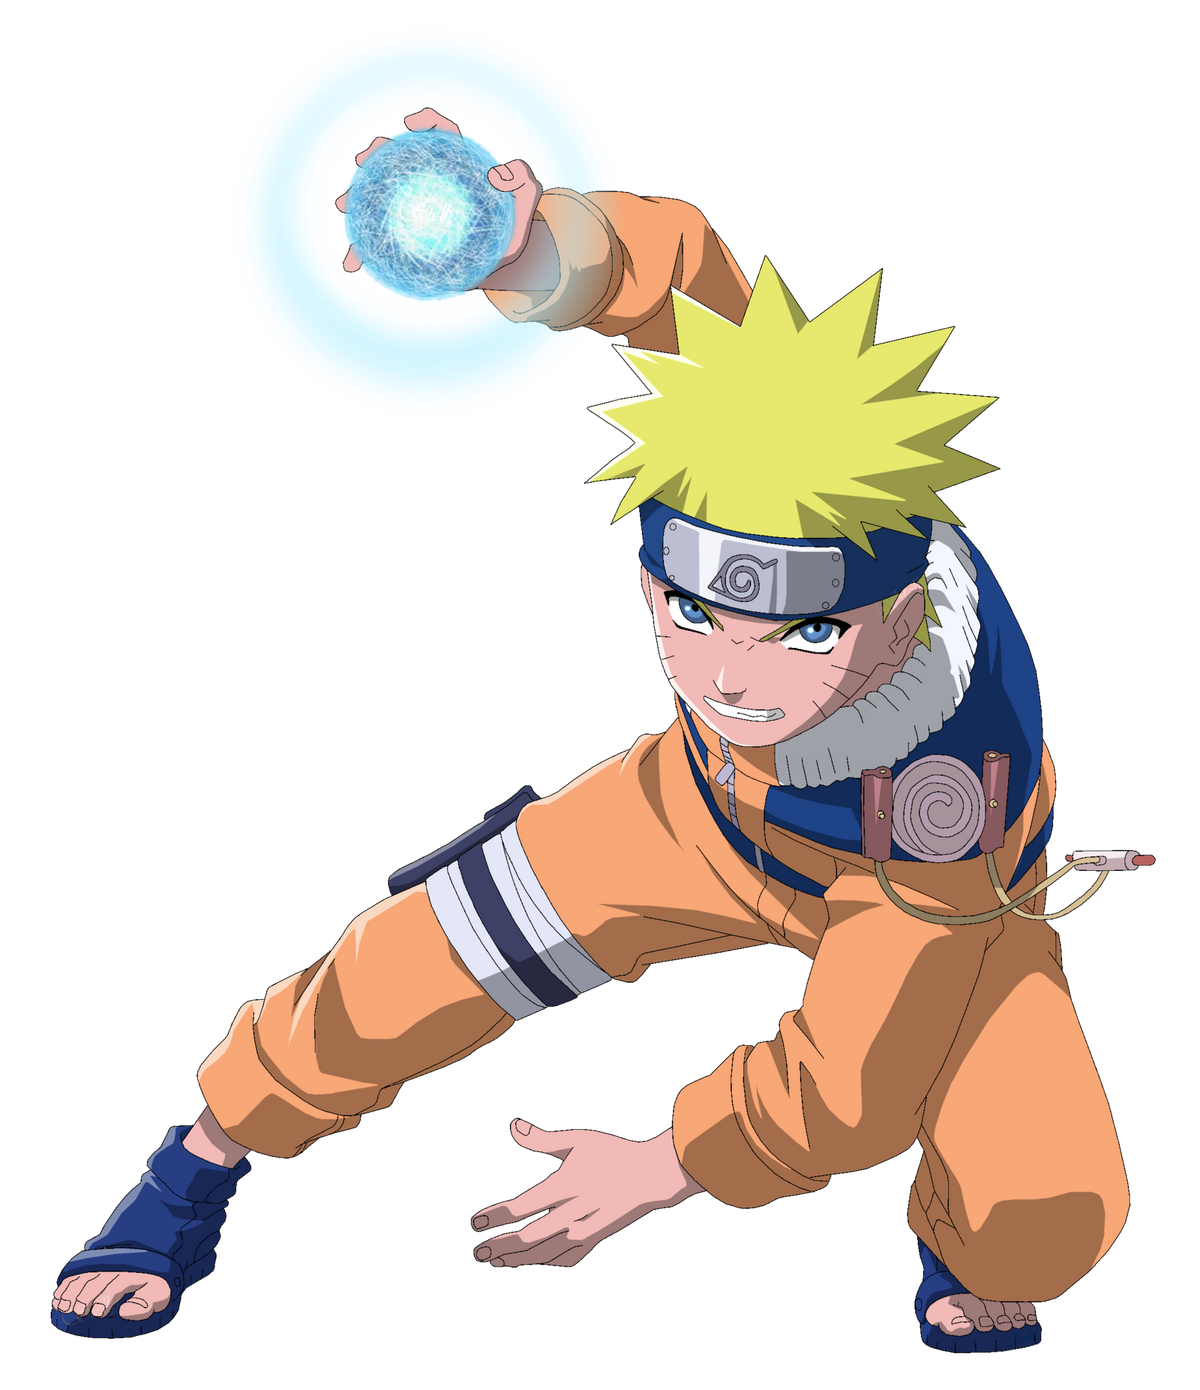 Narutolovers💜🎈 Naruto uzumaki# #Narutolovers💜🎈 #Naruto #Anime